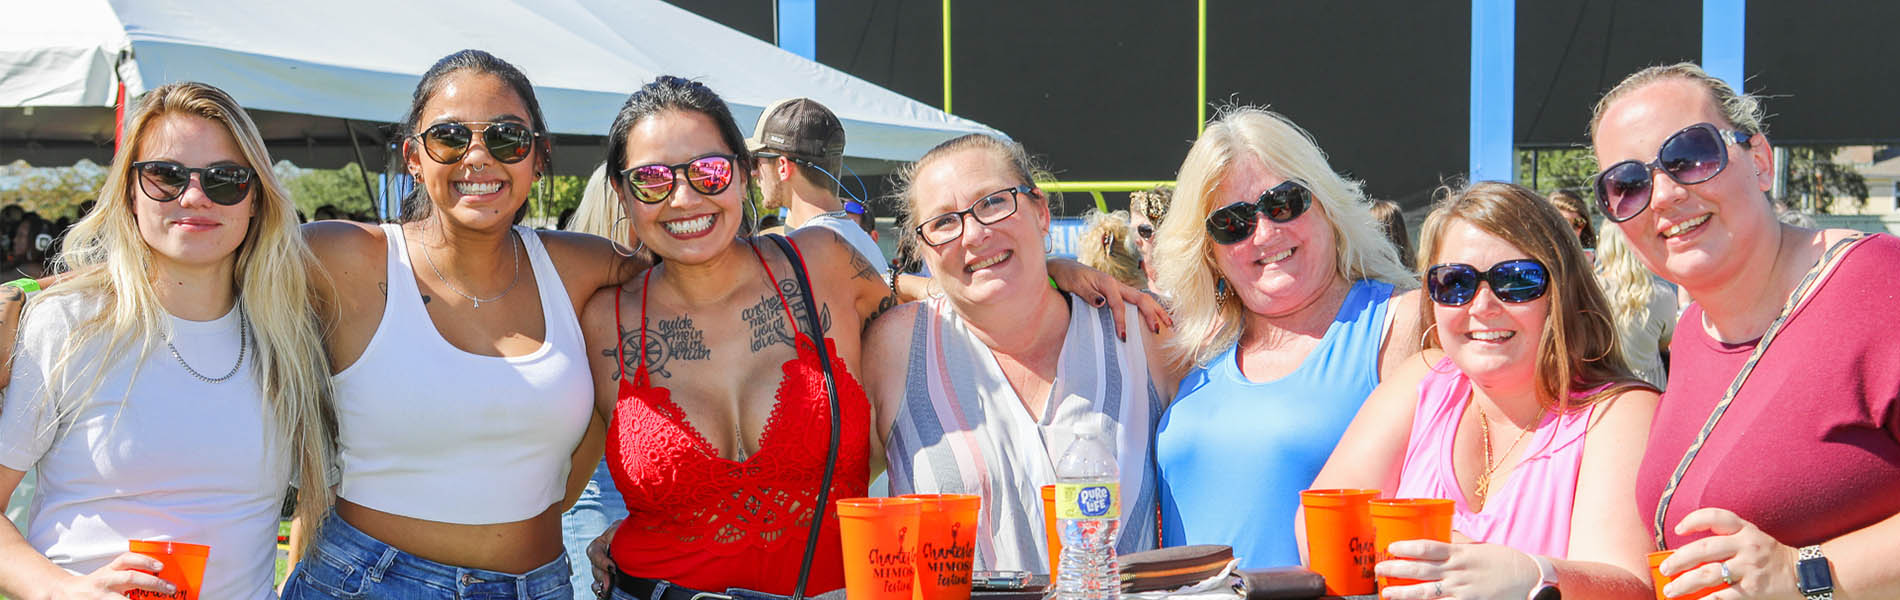 Women attending the Charleston Brunch Fest